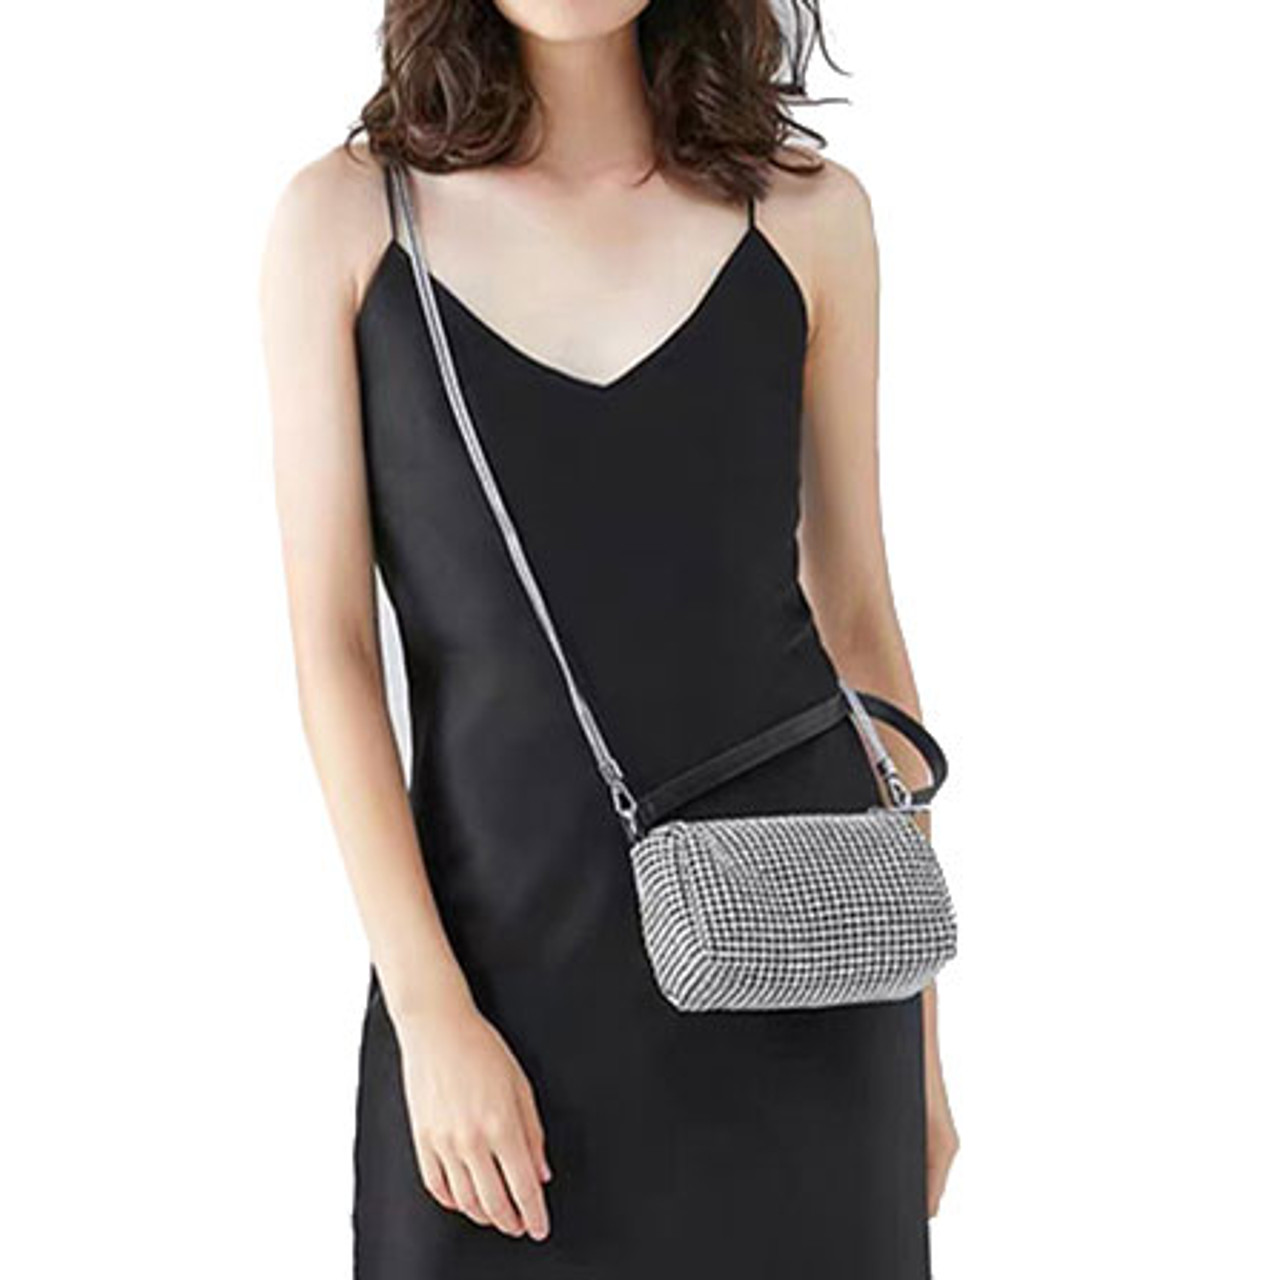 Crystal Rhinestone Crossbody Bag Women Bling Purse Party Handbag Chain  Clutch | eBay